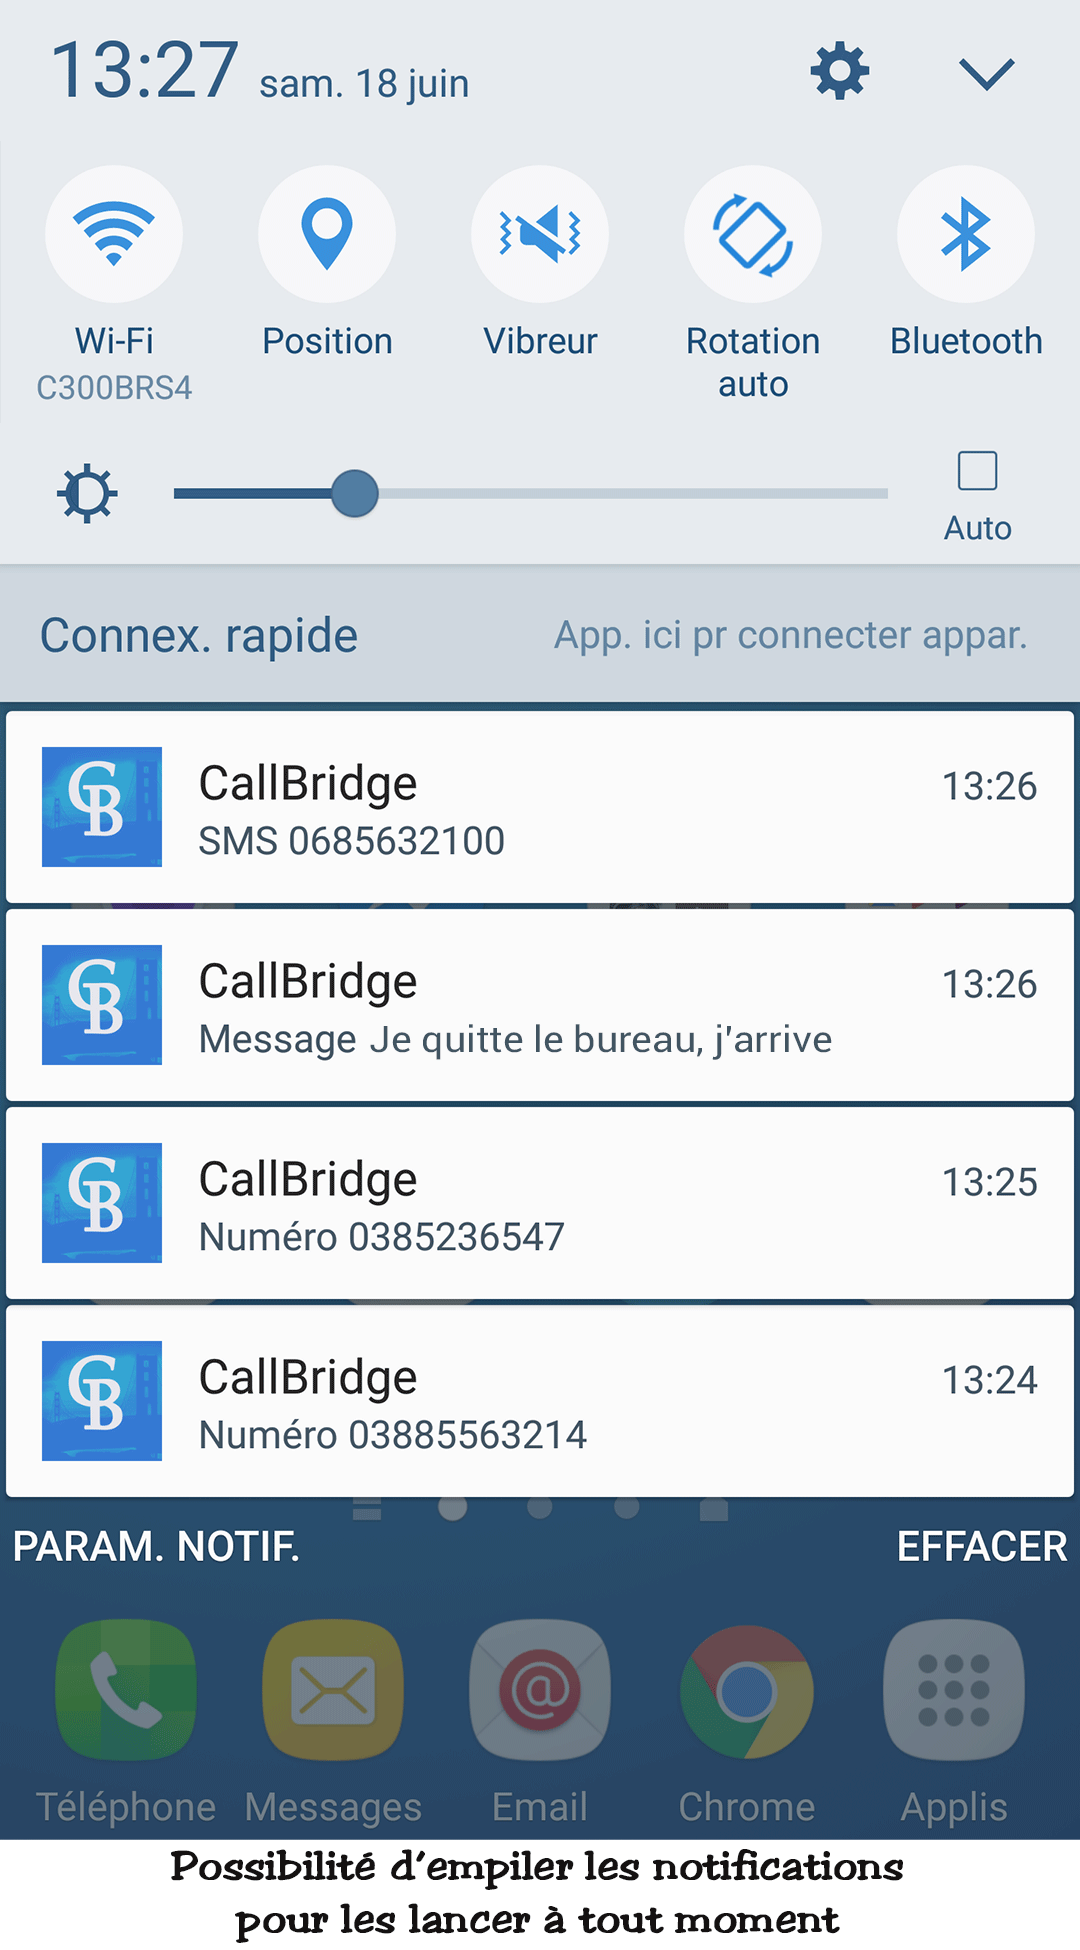 CallBridge Mobile - VOus lancez les appels/SMS immédiatement, ou les mettez dans la liste de notifications pour plus tard